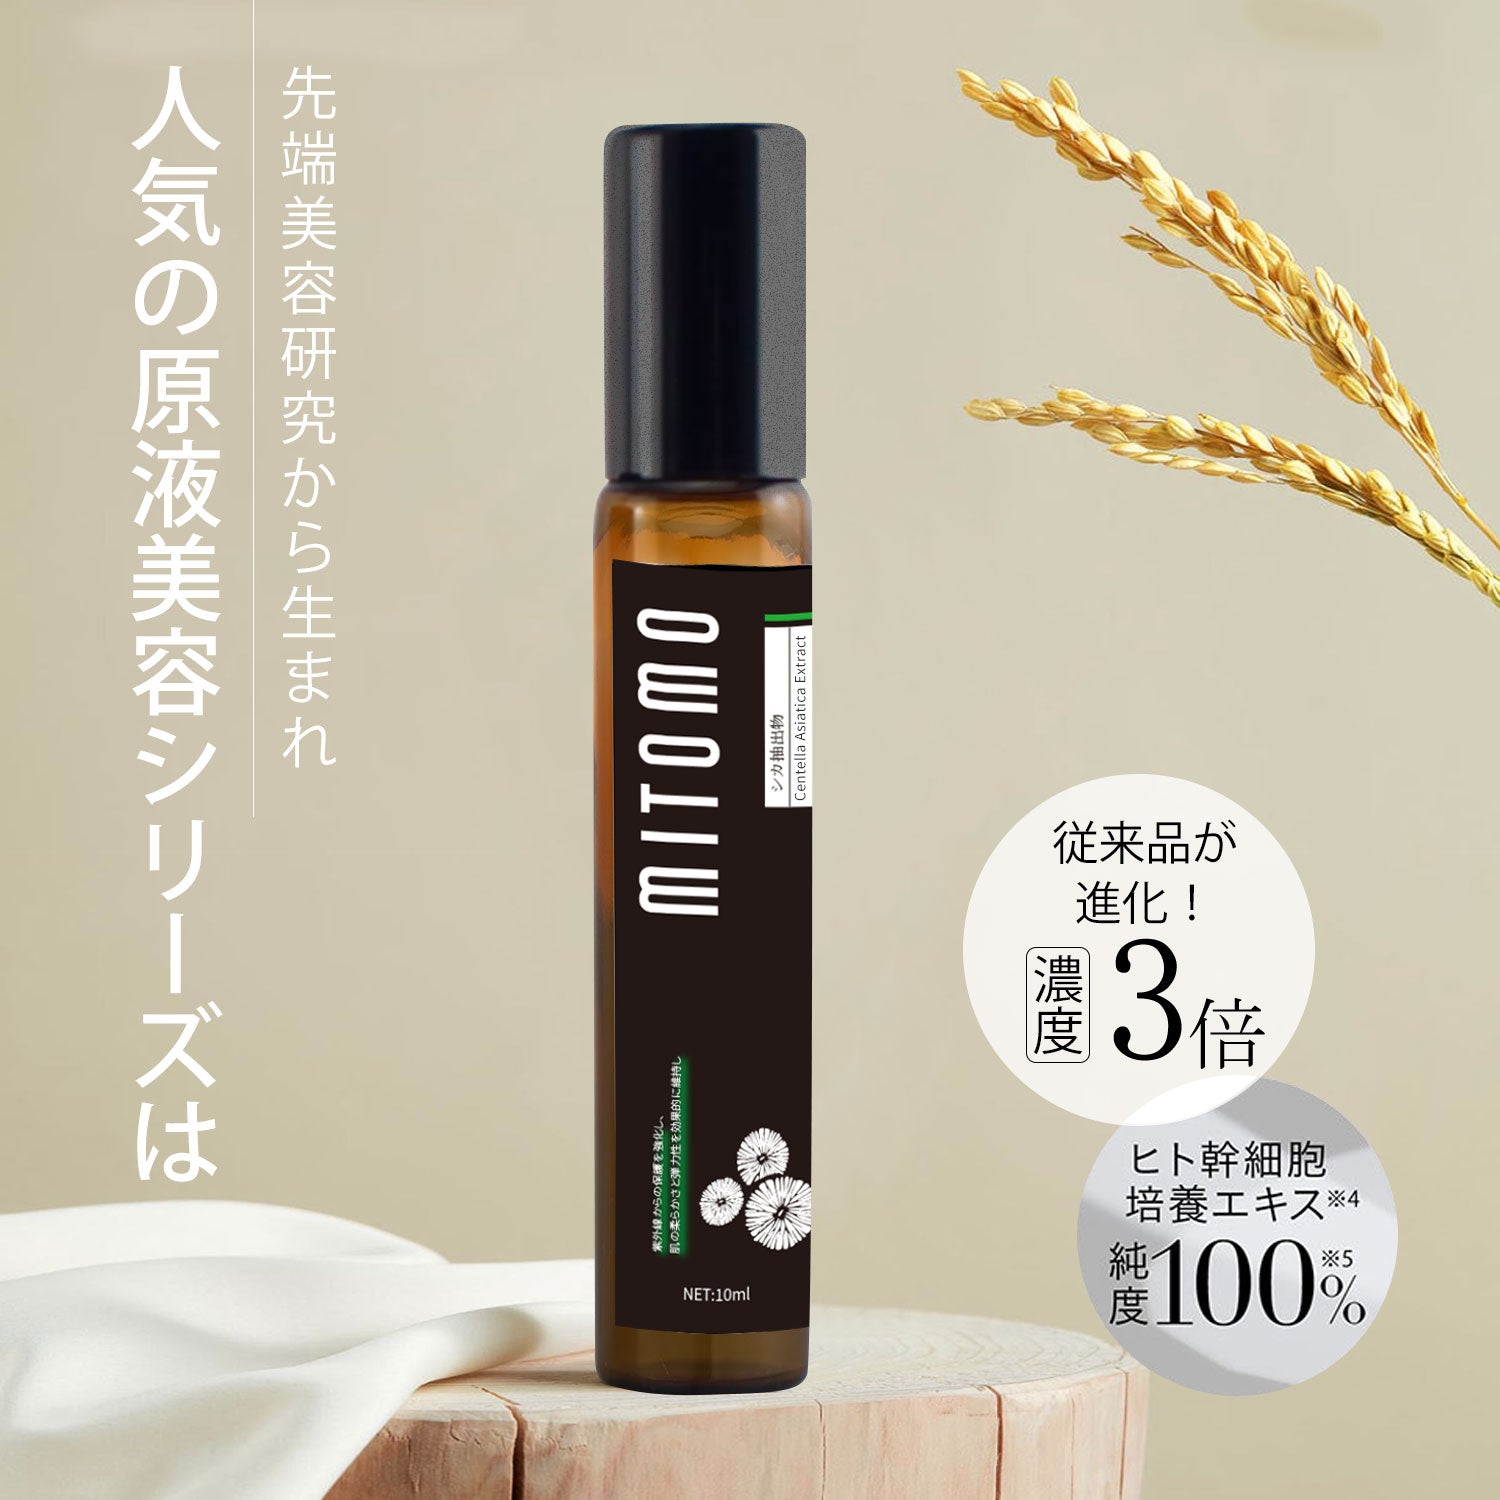 MITOMO 日本製玄米エキススキンケア 潤い 保湿 フアンペアボトル10mlエキス【EXSA00008-01-010】